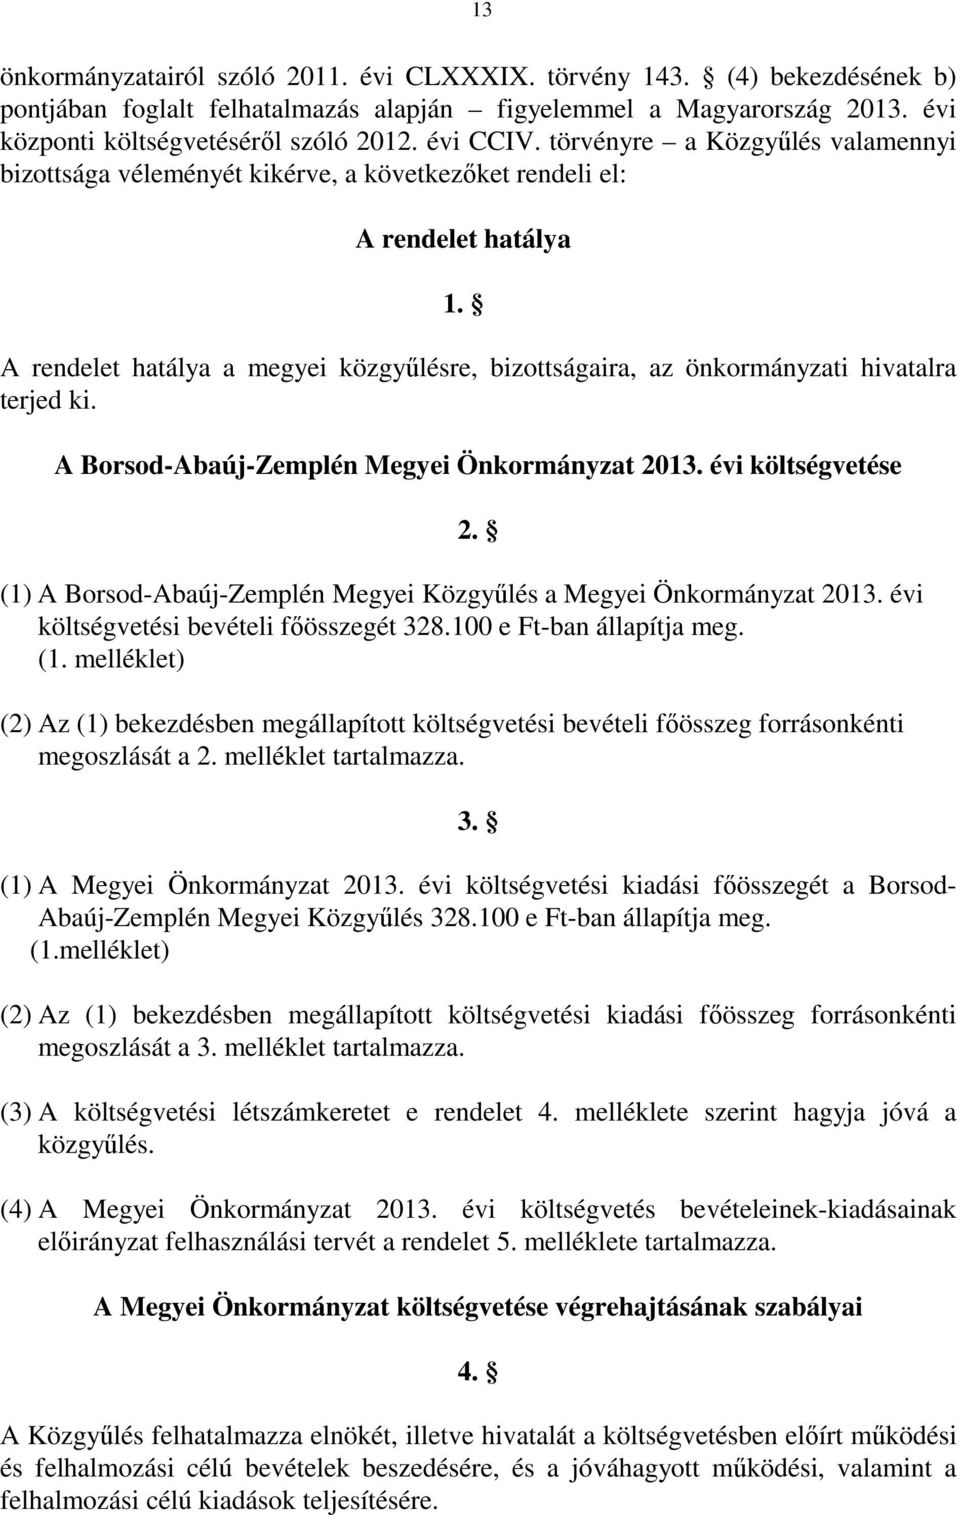 A rendelet hatálya a megyei közgyűlésre, bizottságaira, az önkormányzati hivatalra terjed ki. A Borsod-Abaúj-Zemplén Megyei Önkormányzat 2013. évi költségvetése 2.